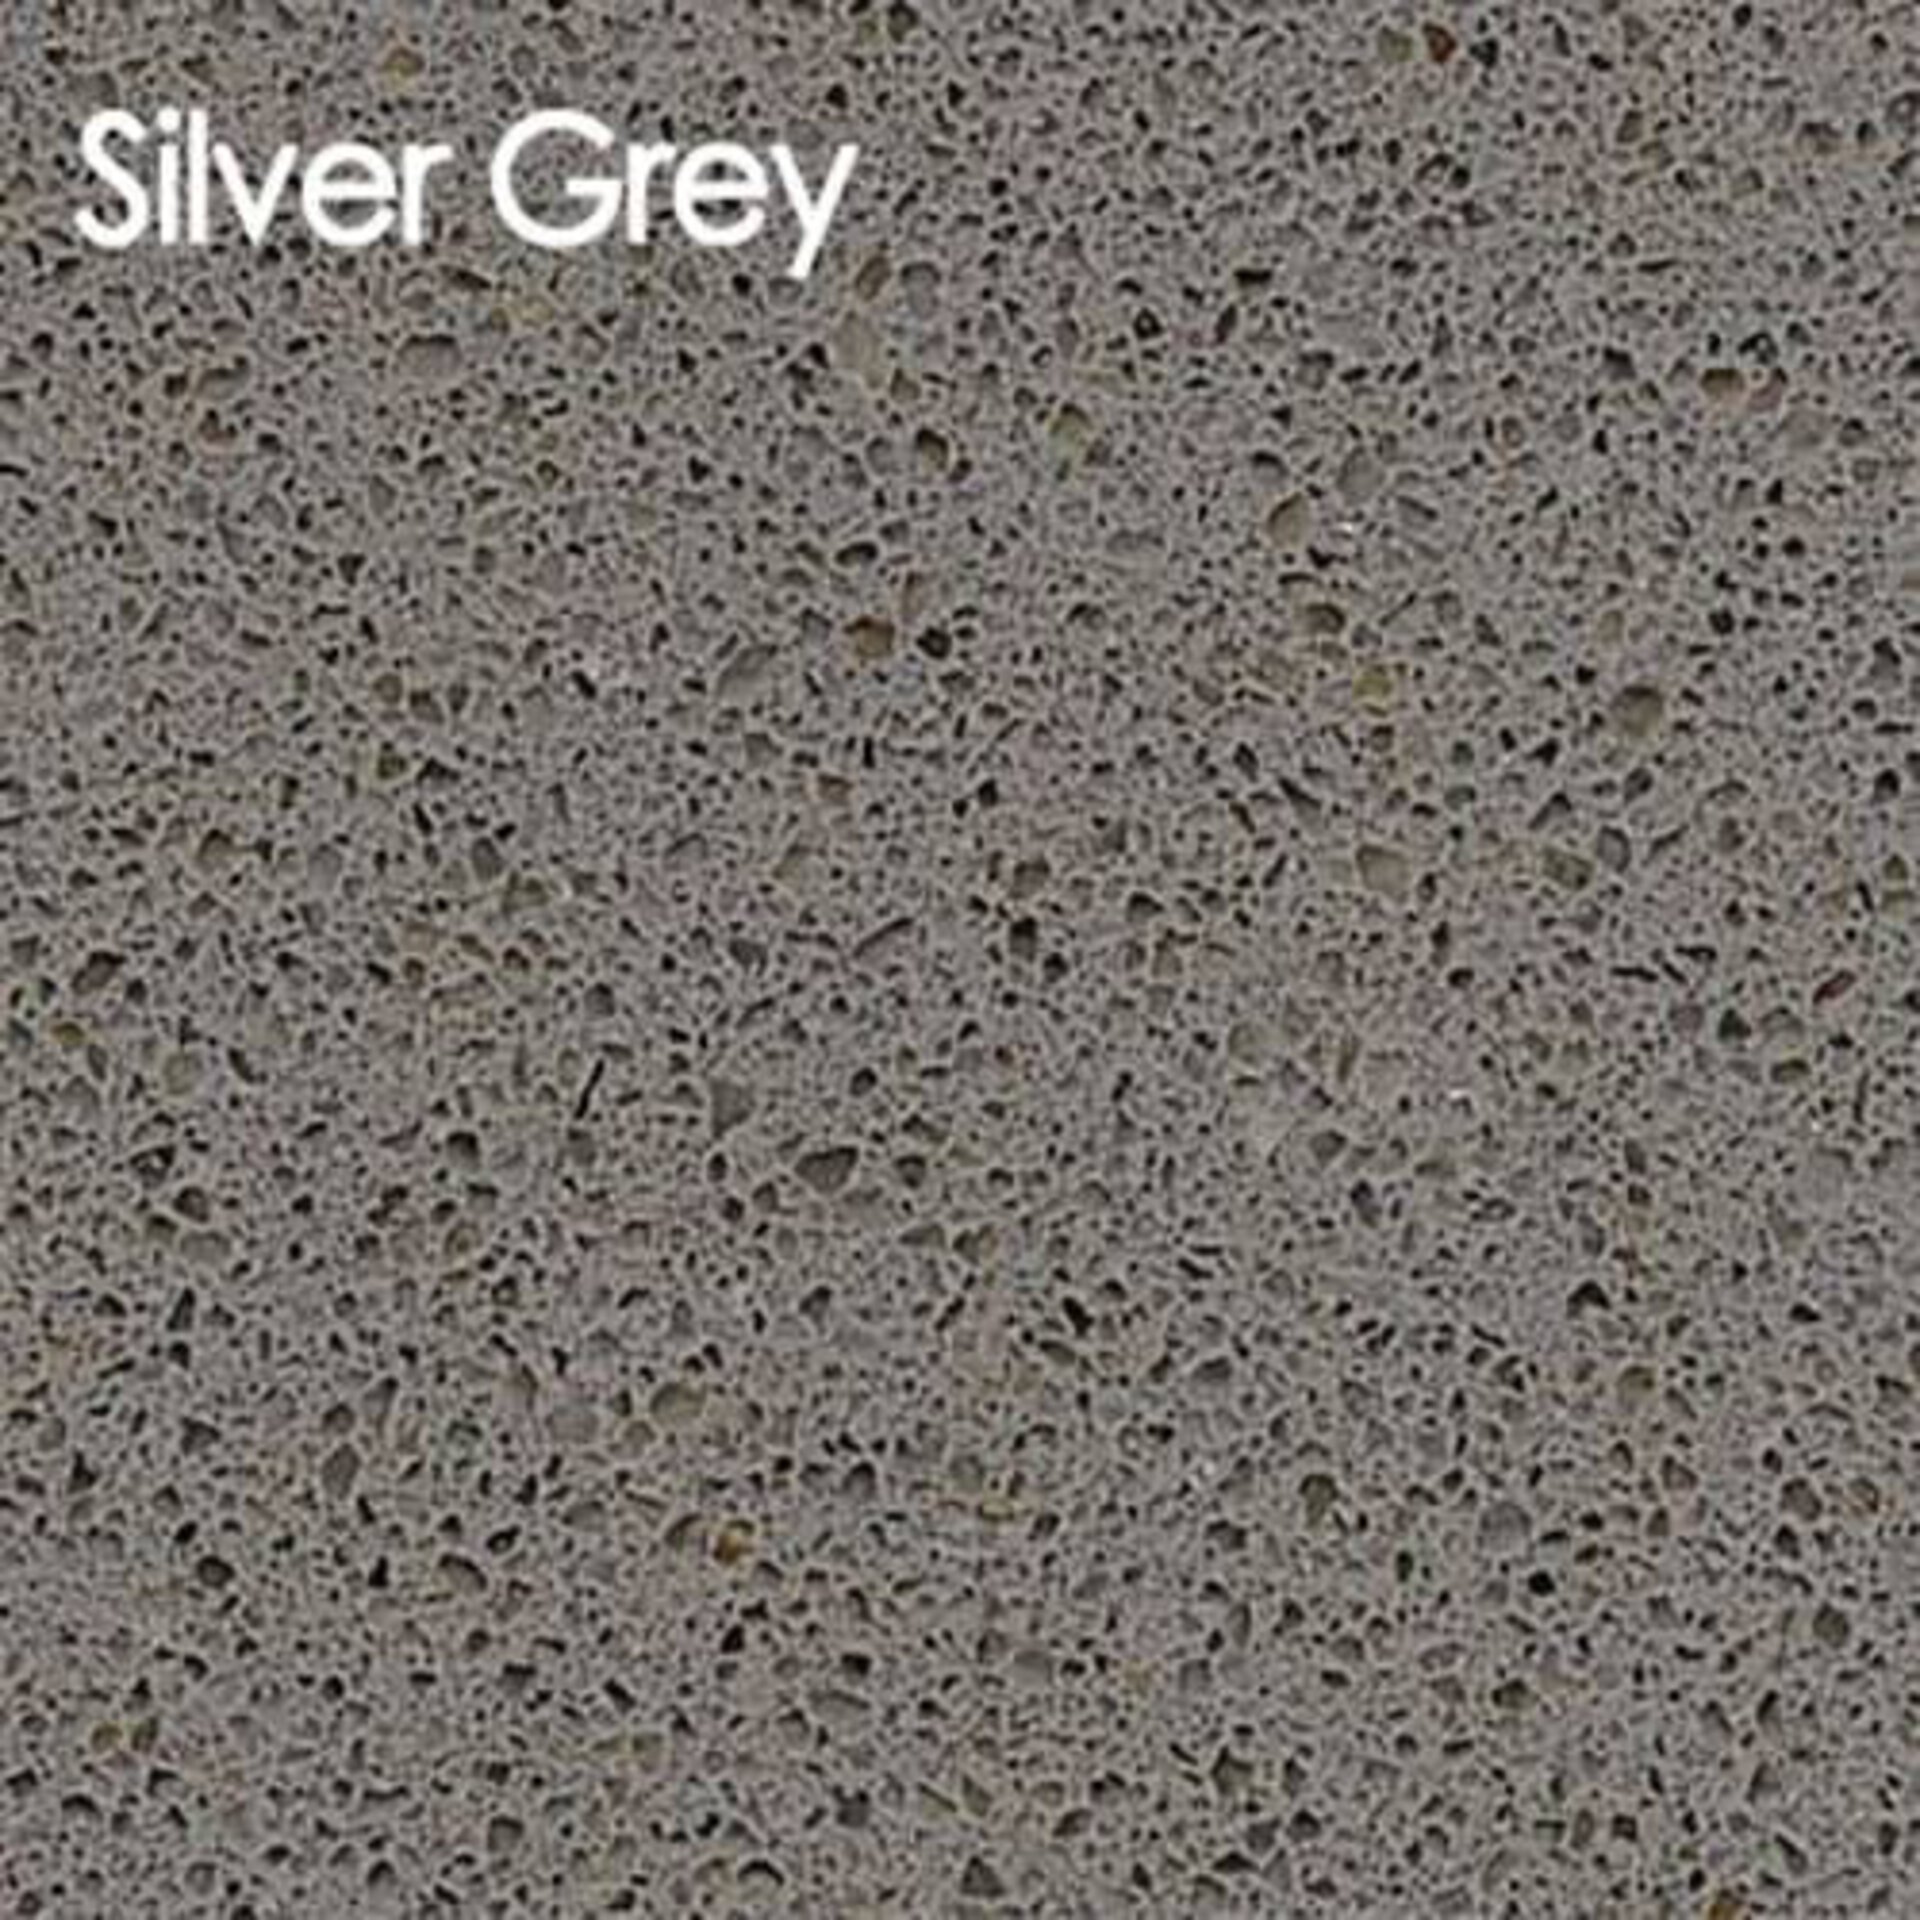 Arbeitsplatte aus Kunststein in der Ausführung Silver Grey.